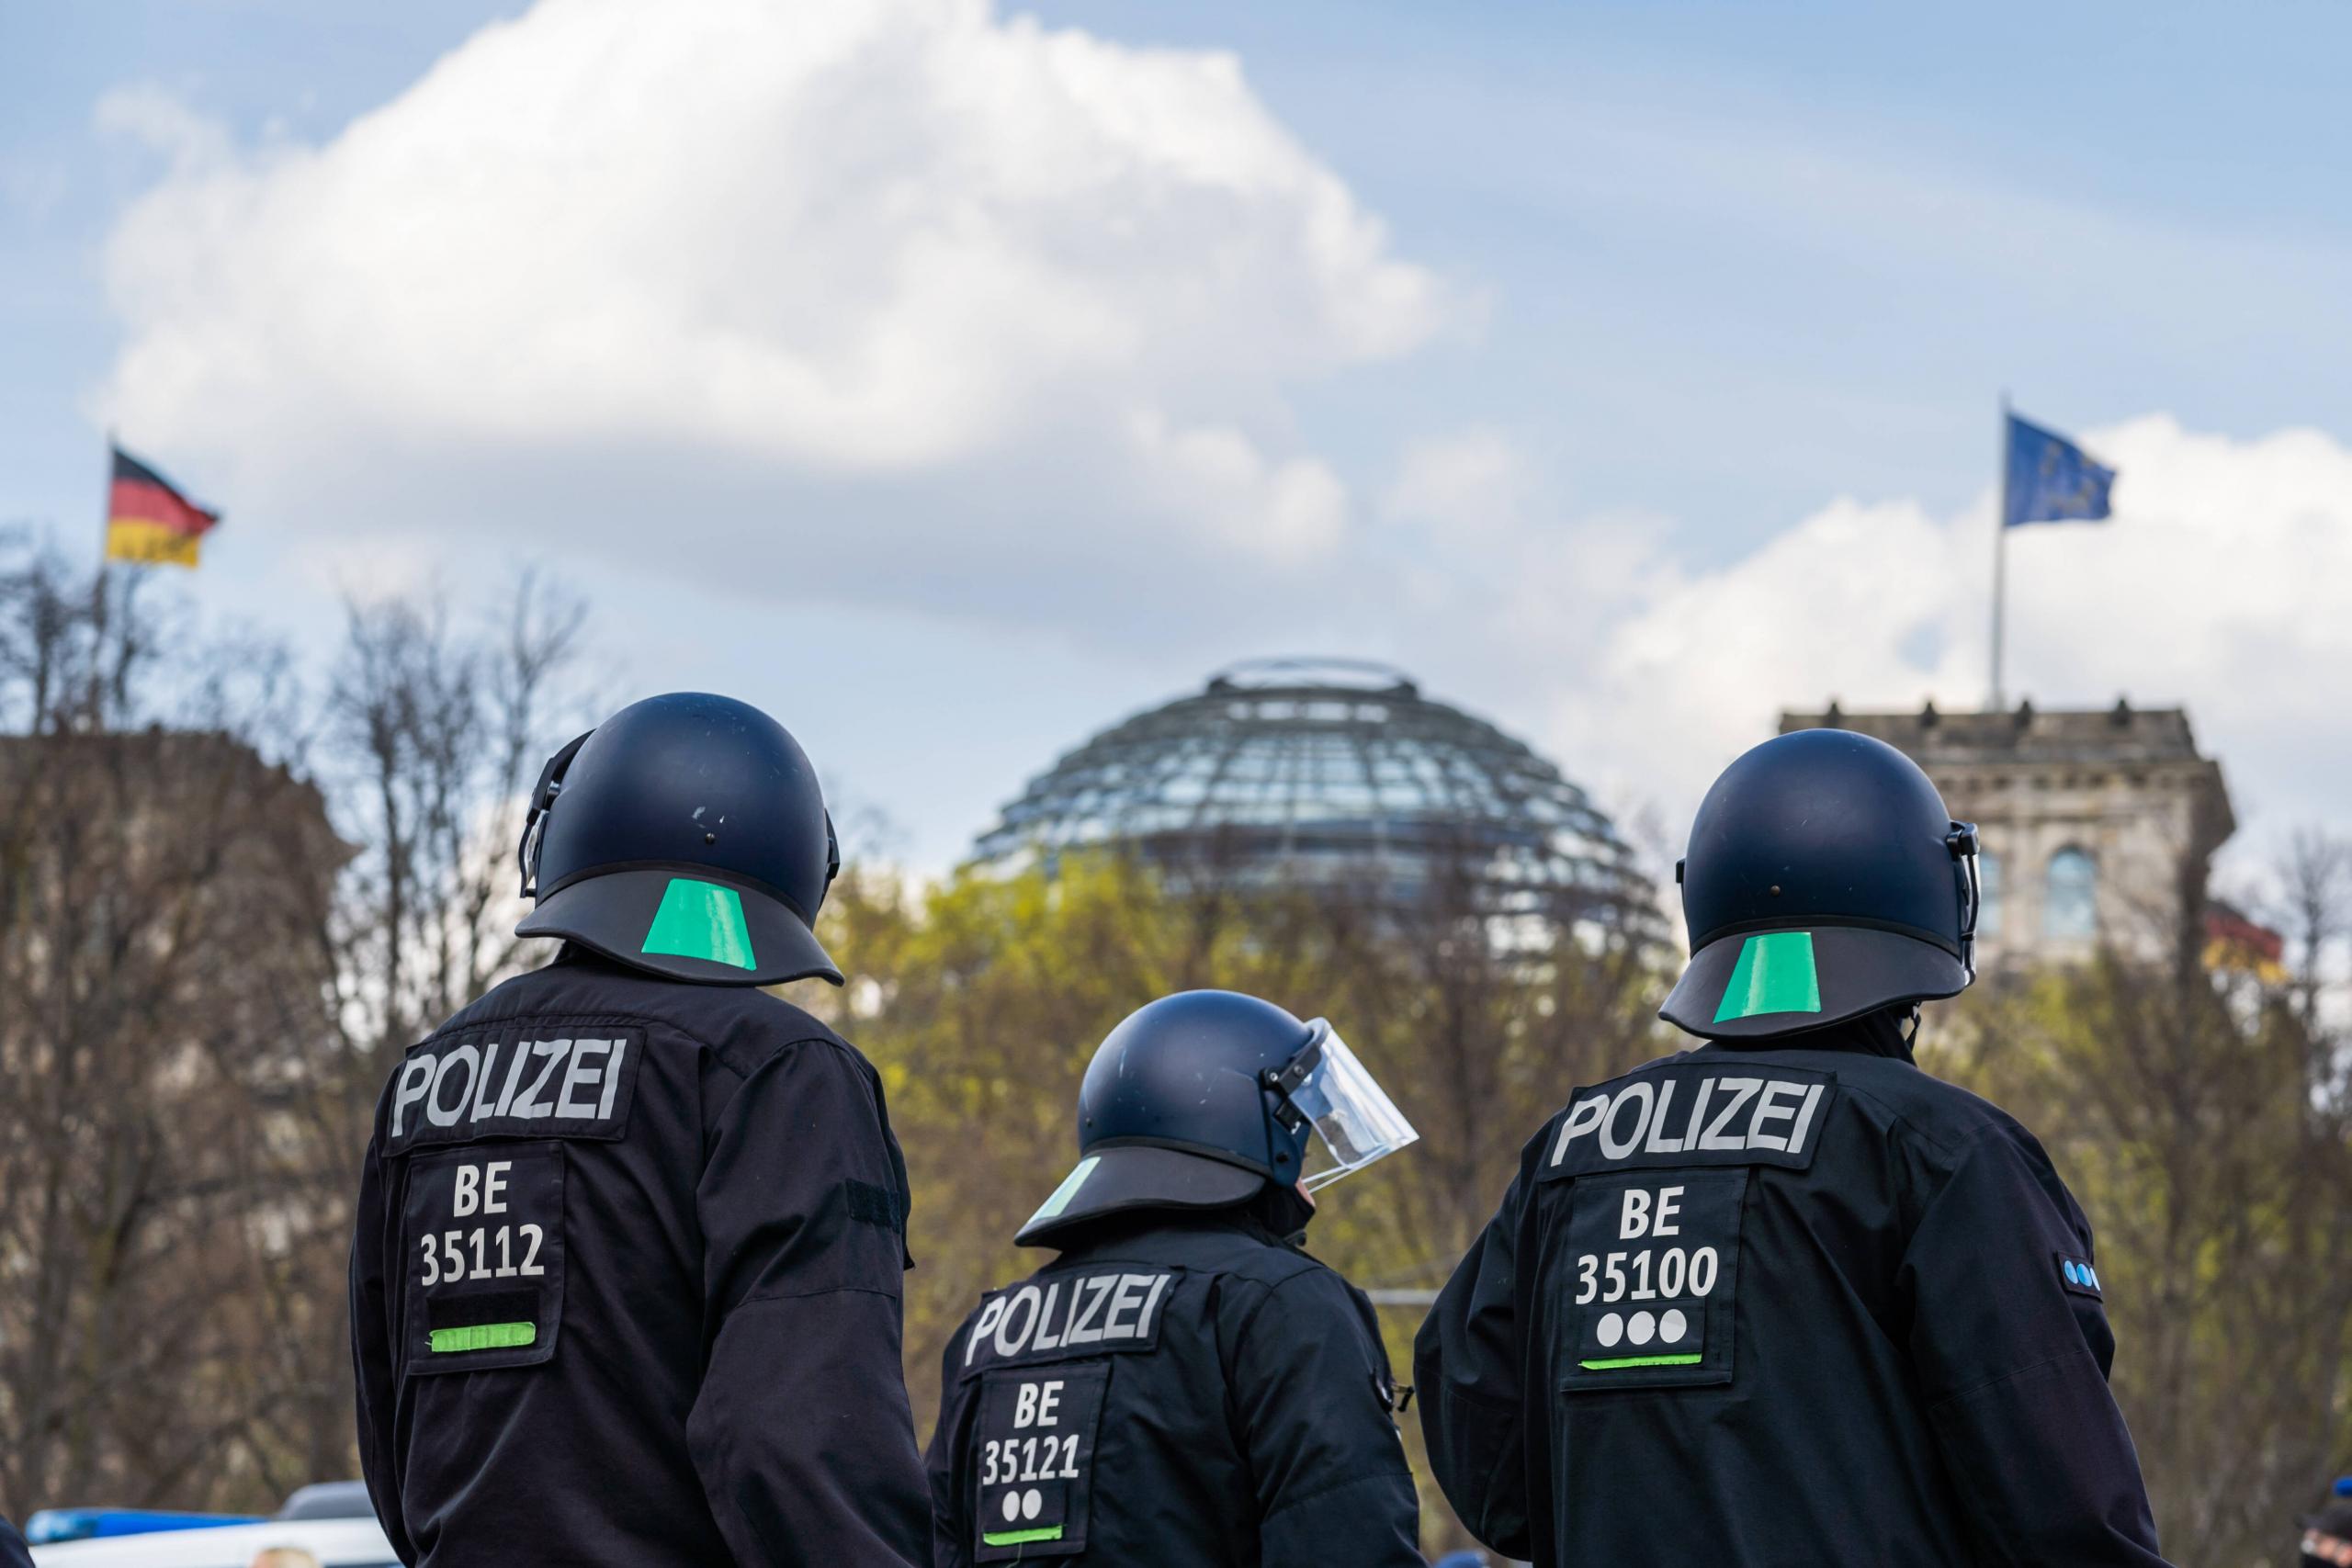 Polizisten bei einer Demonstration in der Nähe des Deutschen Bundestags, 21.04.2021.